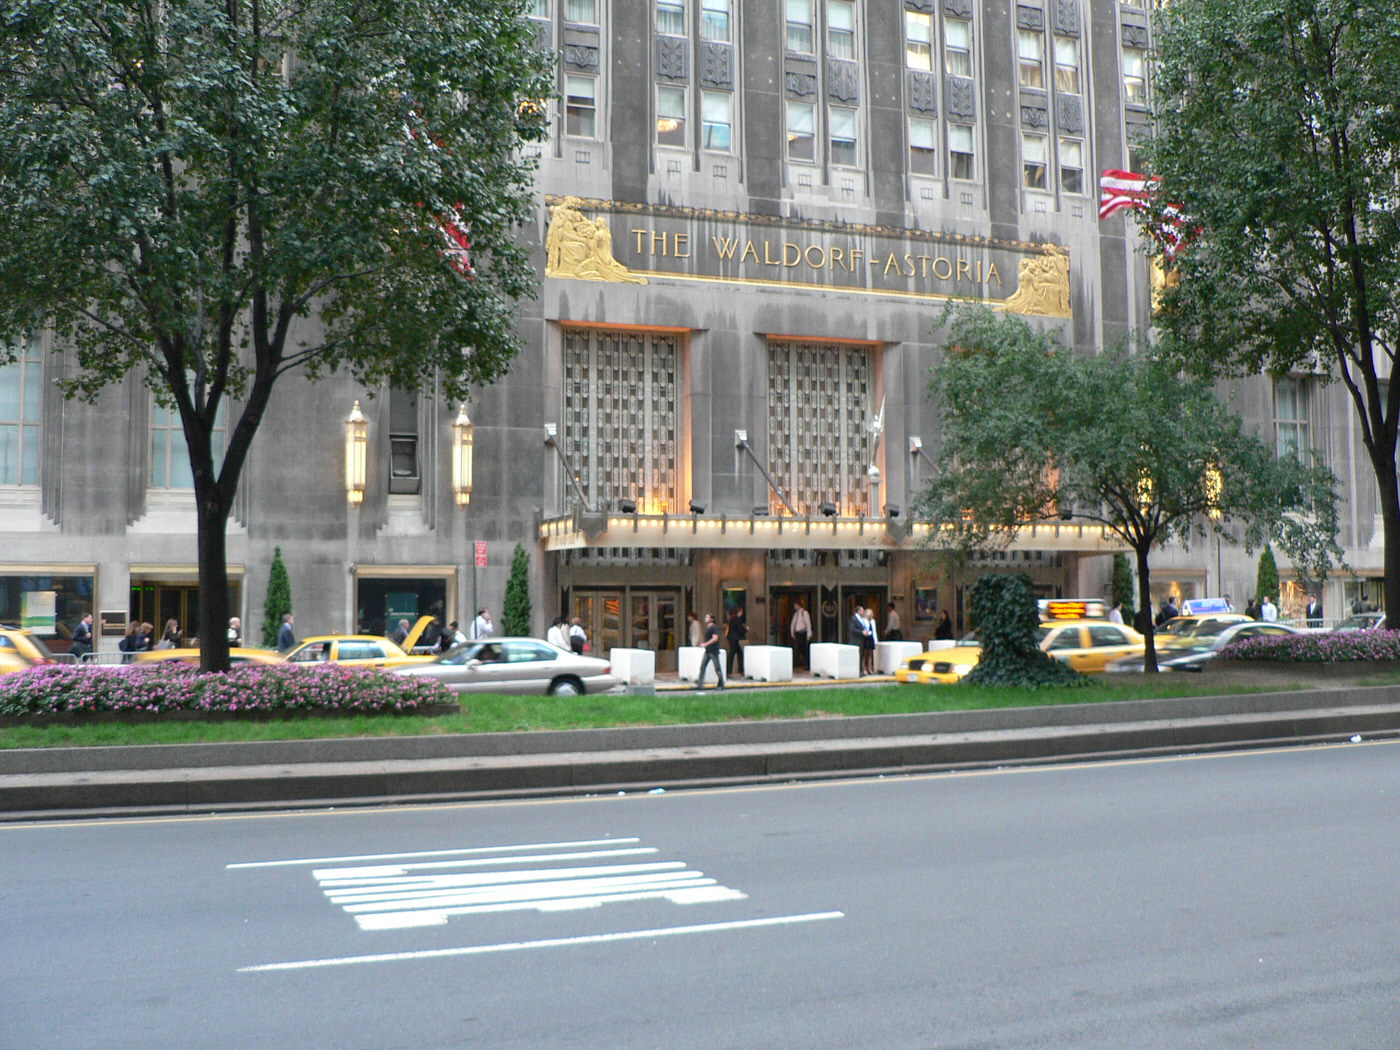 The Waldorf Astoria Hotel, Manhattan, 2006.